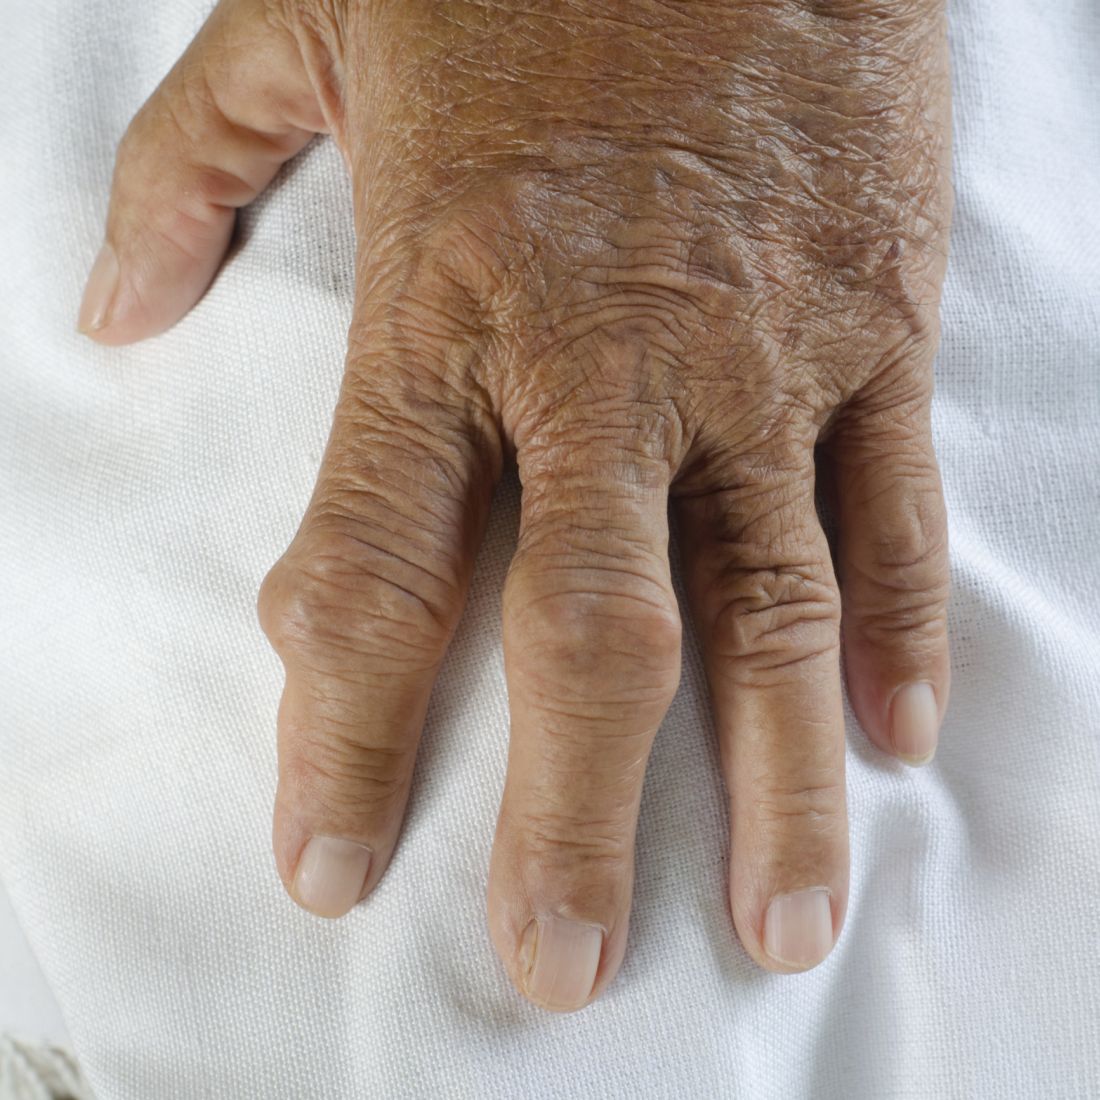 ревматоидный артрит пальцы фото